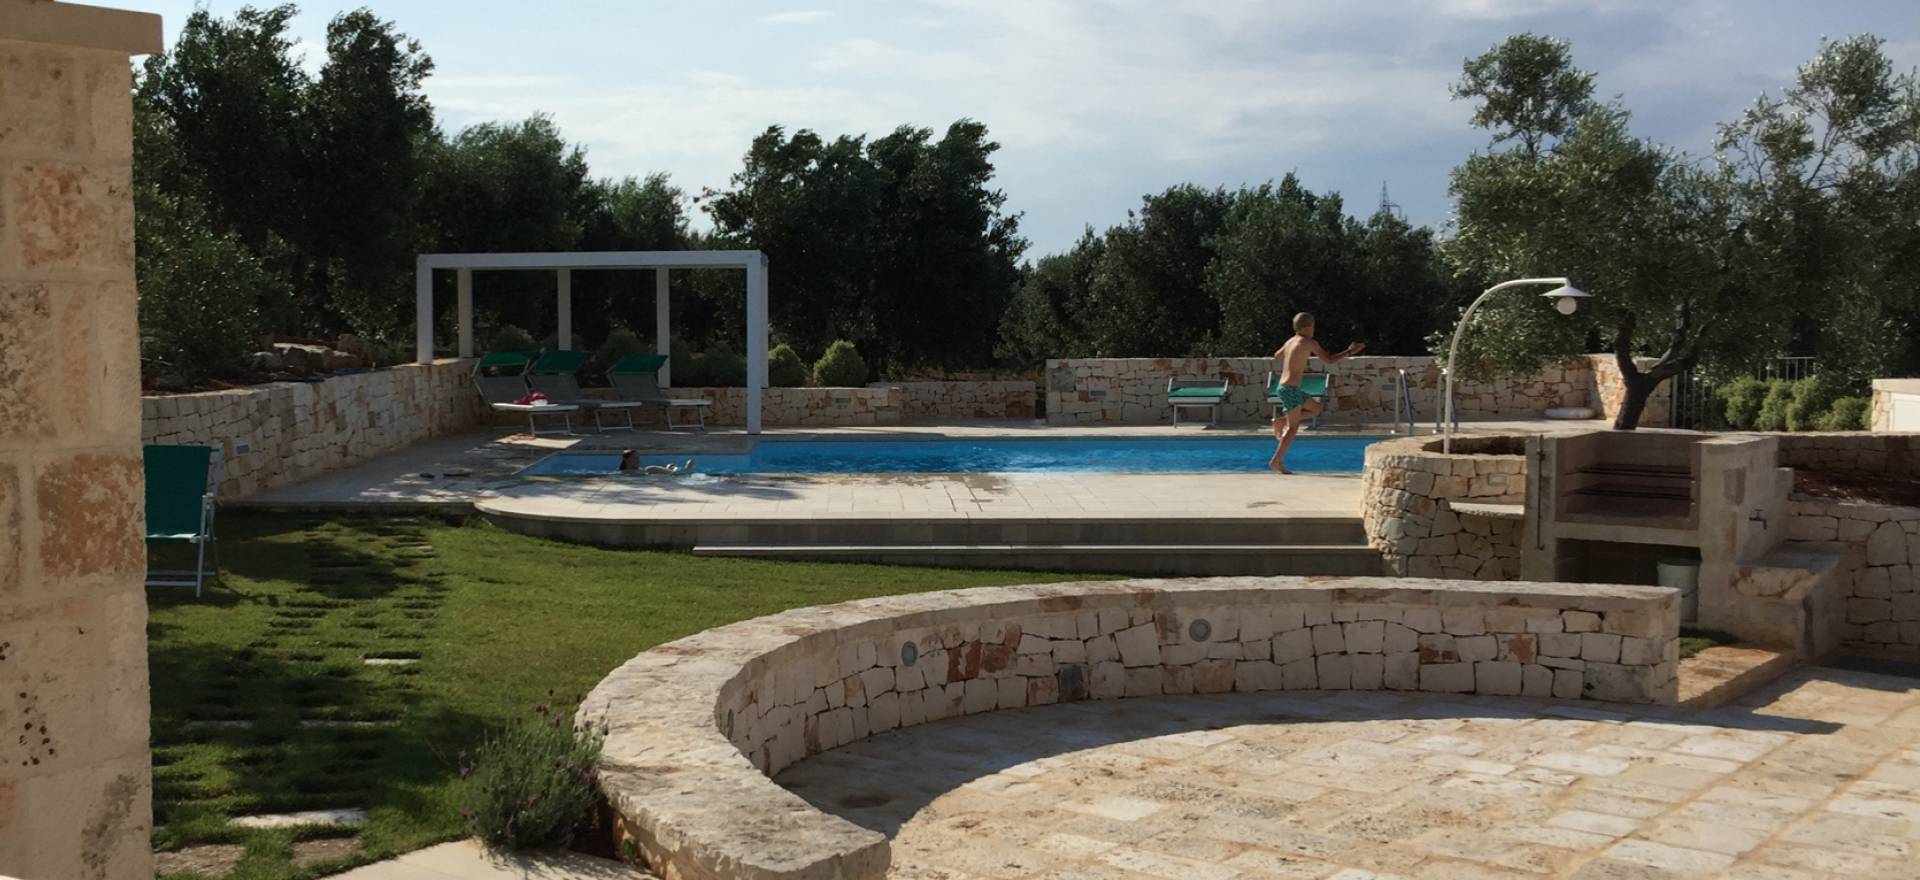 Prachtige verbouwde trullo met privé zwembad